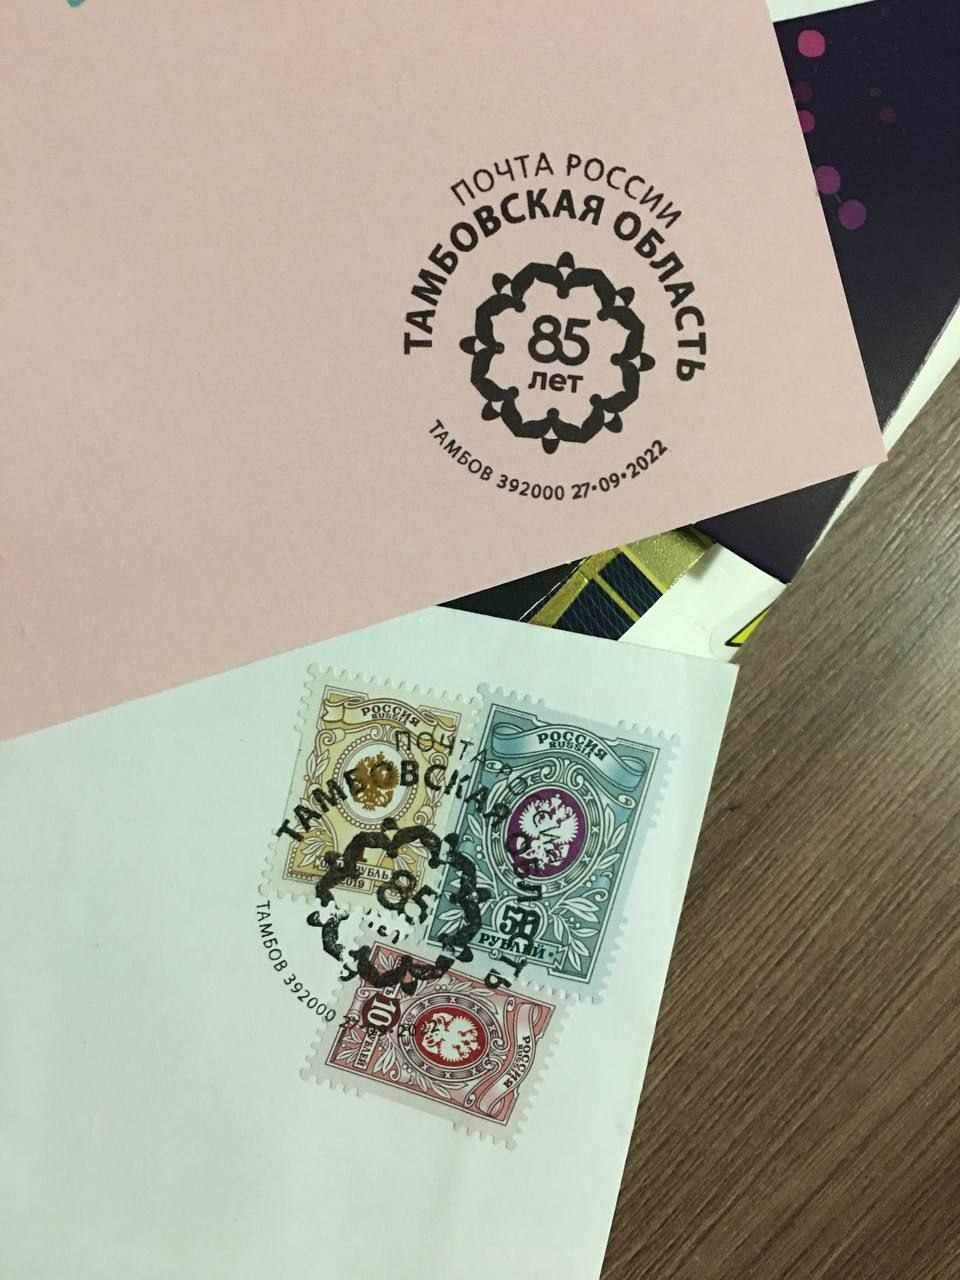 Почта России поздравила Тамбовскую область с юбилеем, выпустив особенный почтовый штемпель